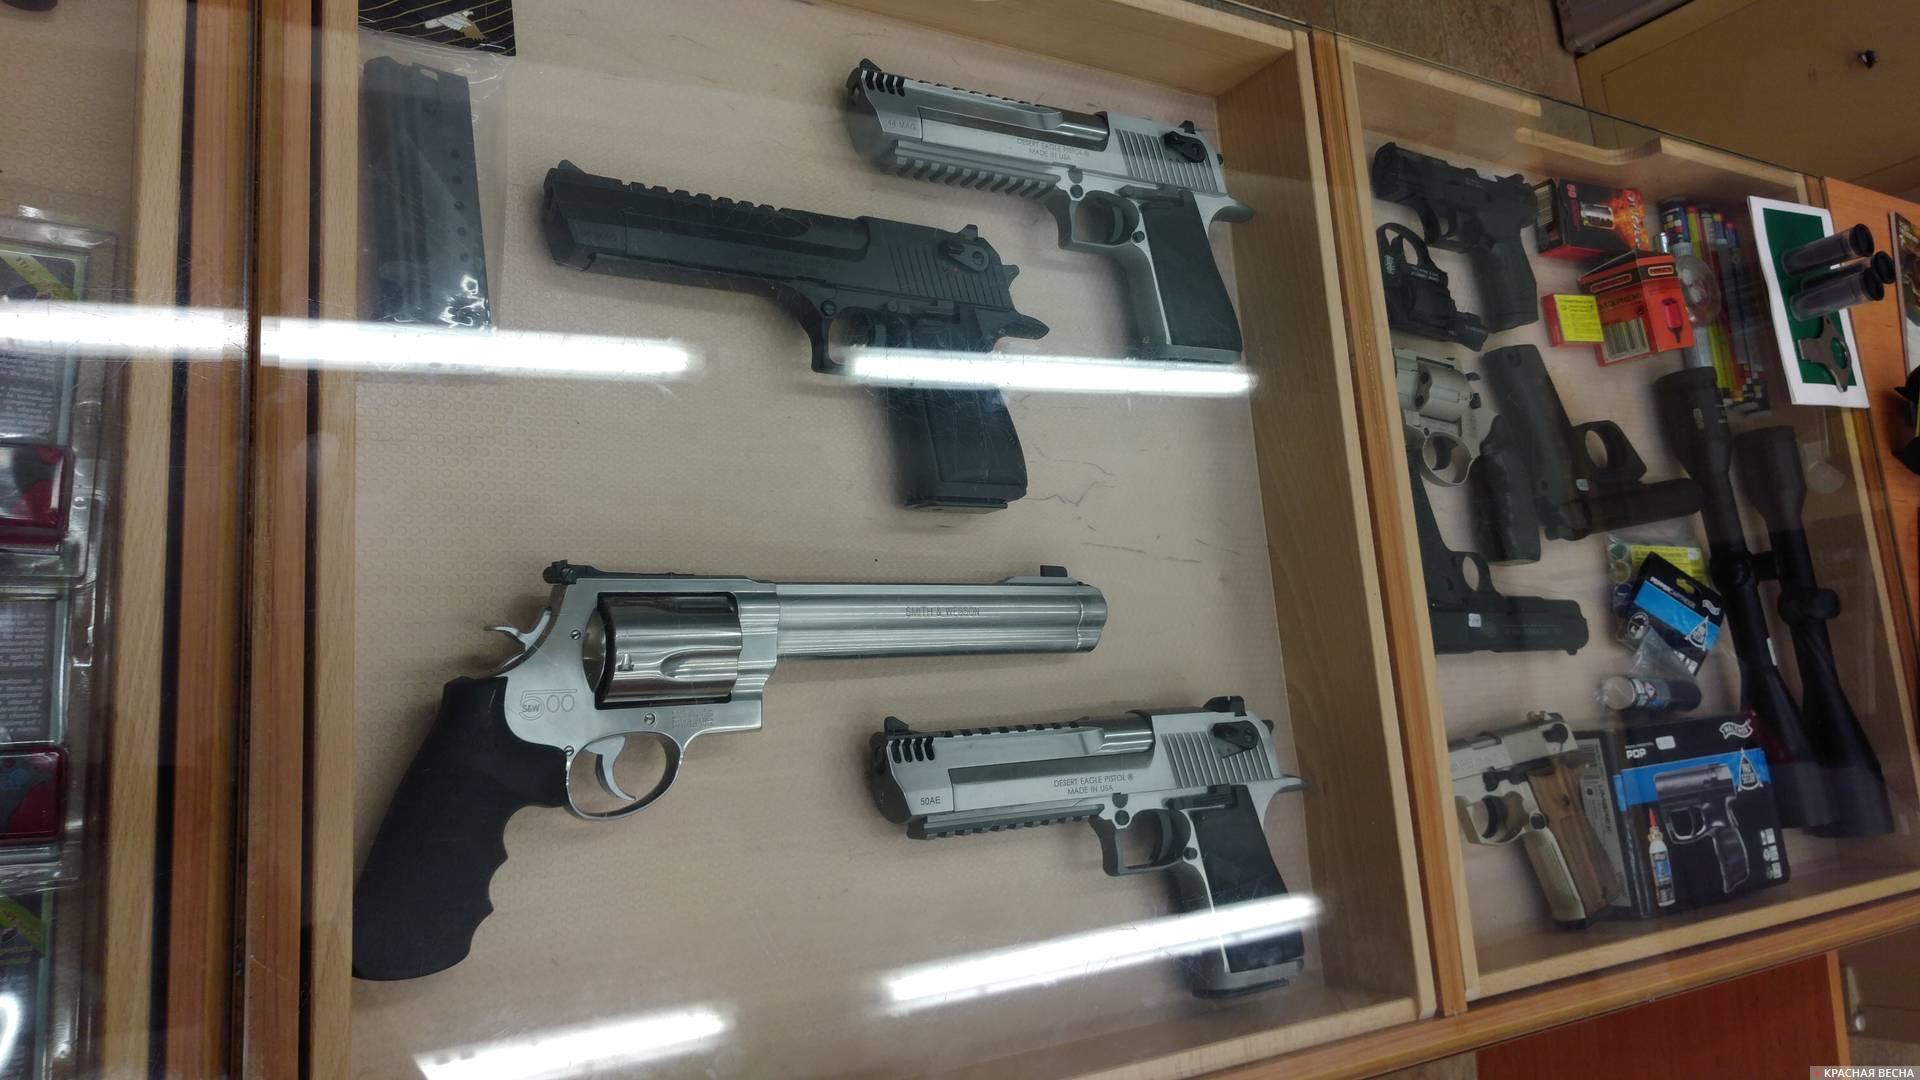 В оружейном магазине револьвер Смит и Вессон и пистолеты Desert Eagle («Пустынный орел»).